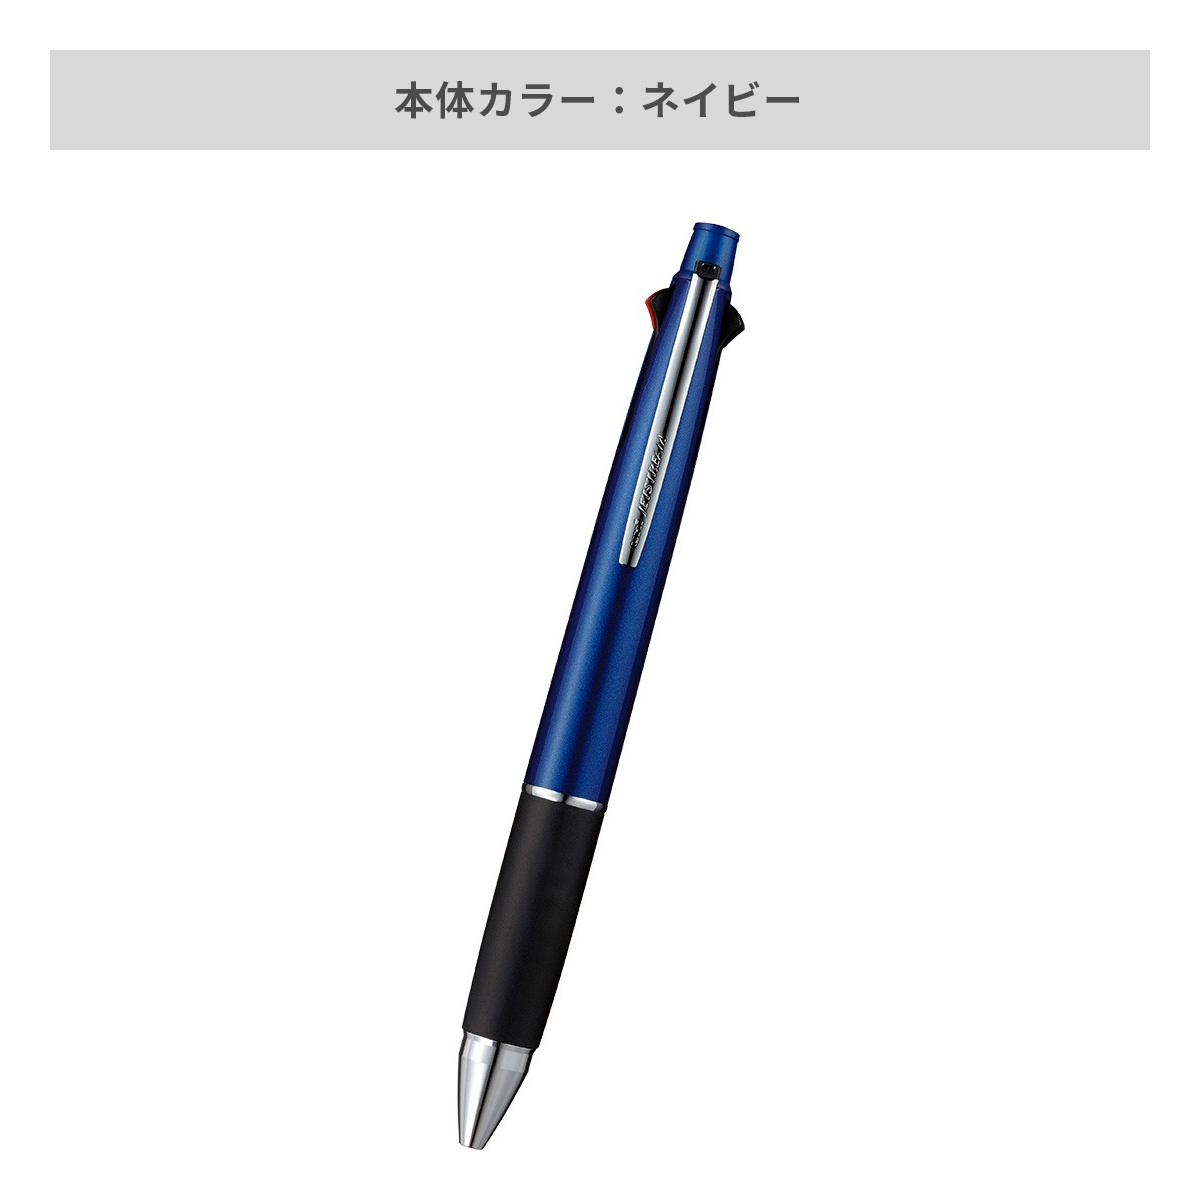 【短納期】三菱鉛筆 ジェットストリーム 多機能ペン 4&1 0.5mm【多機能ペン / レーザー彫刻】 画像4